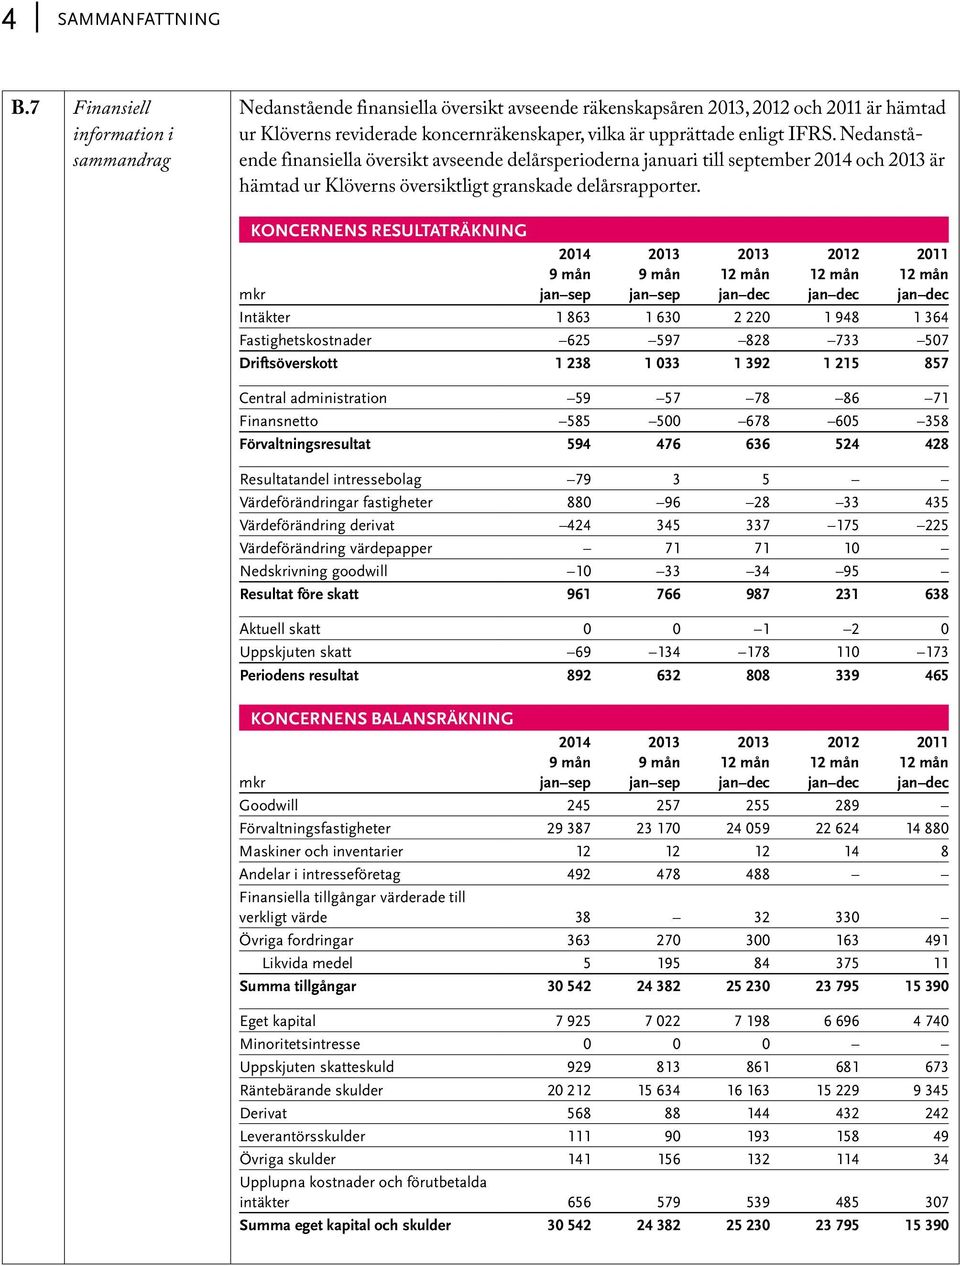 IFRS. Nedanstående finansiella översikt avseende delårsperioderna januari till september 2014 och 2013 är hämtad ur Klöverns översiktligt granskade delårsrapporter.